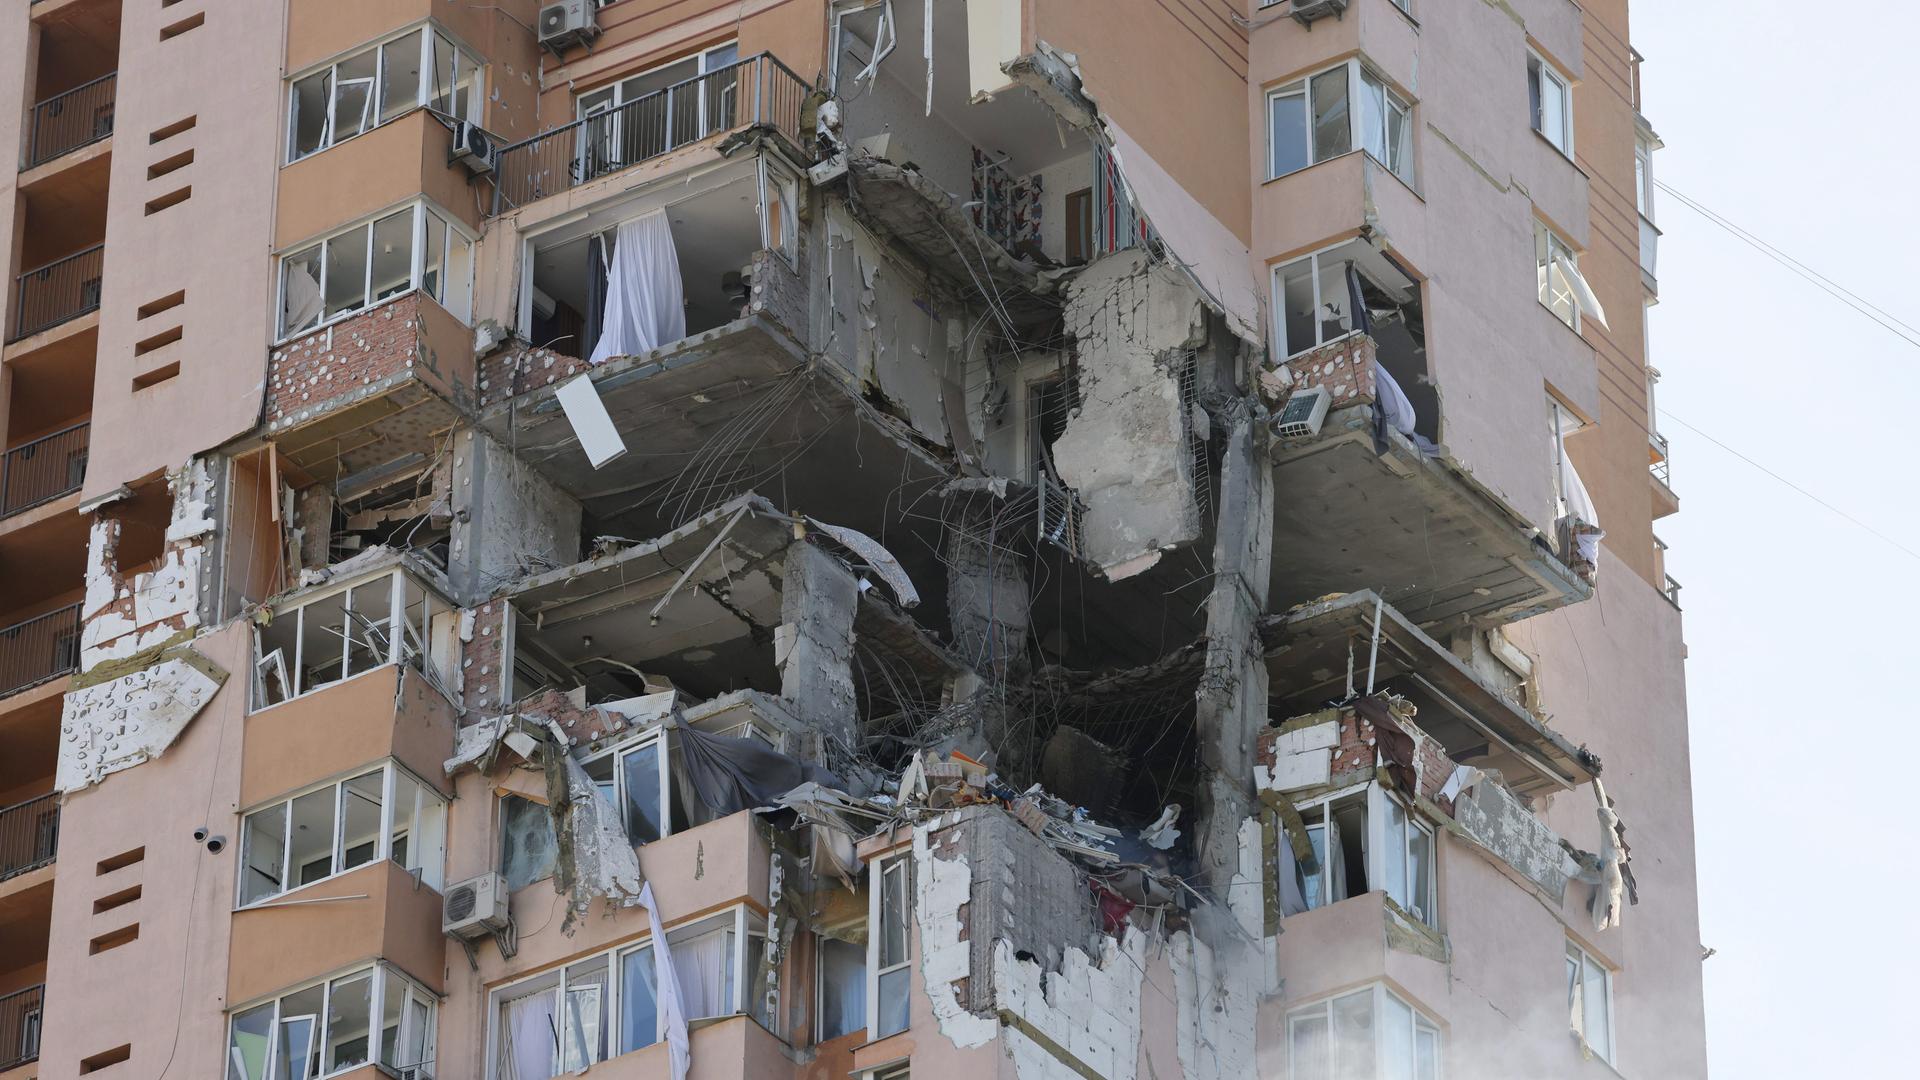 Ein Bombenloch in einem Wohnhaus in Kiew, Ukraine am 26.02.2022.